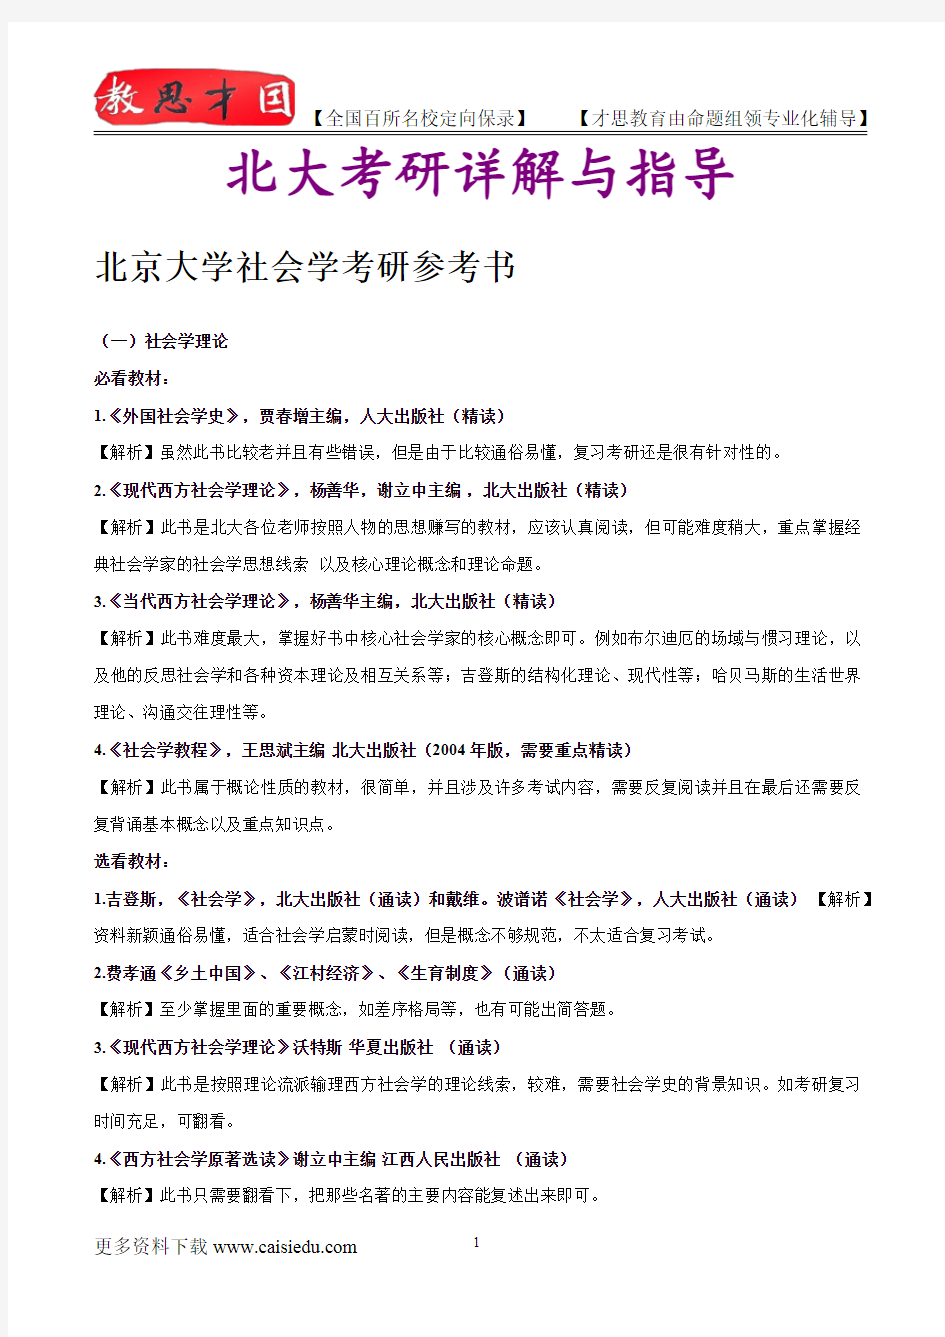 2015年北京大学社会学复试真题,考研笔记,复试流程,考研大纲,考研经验